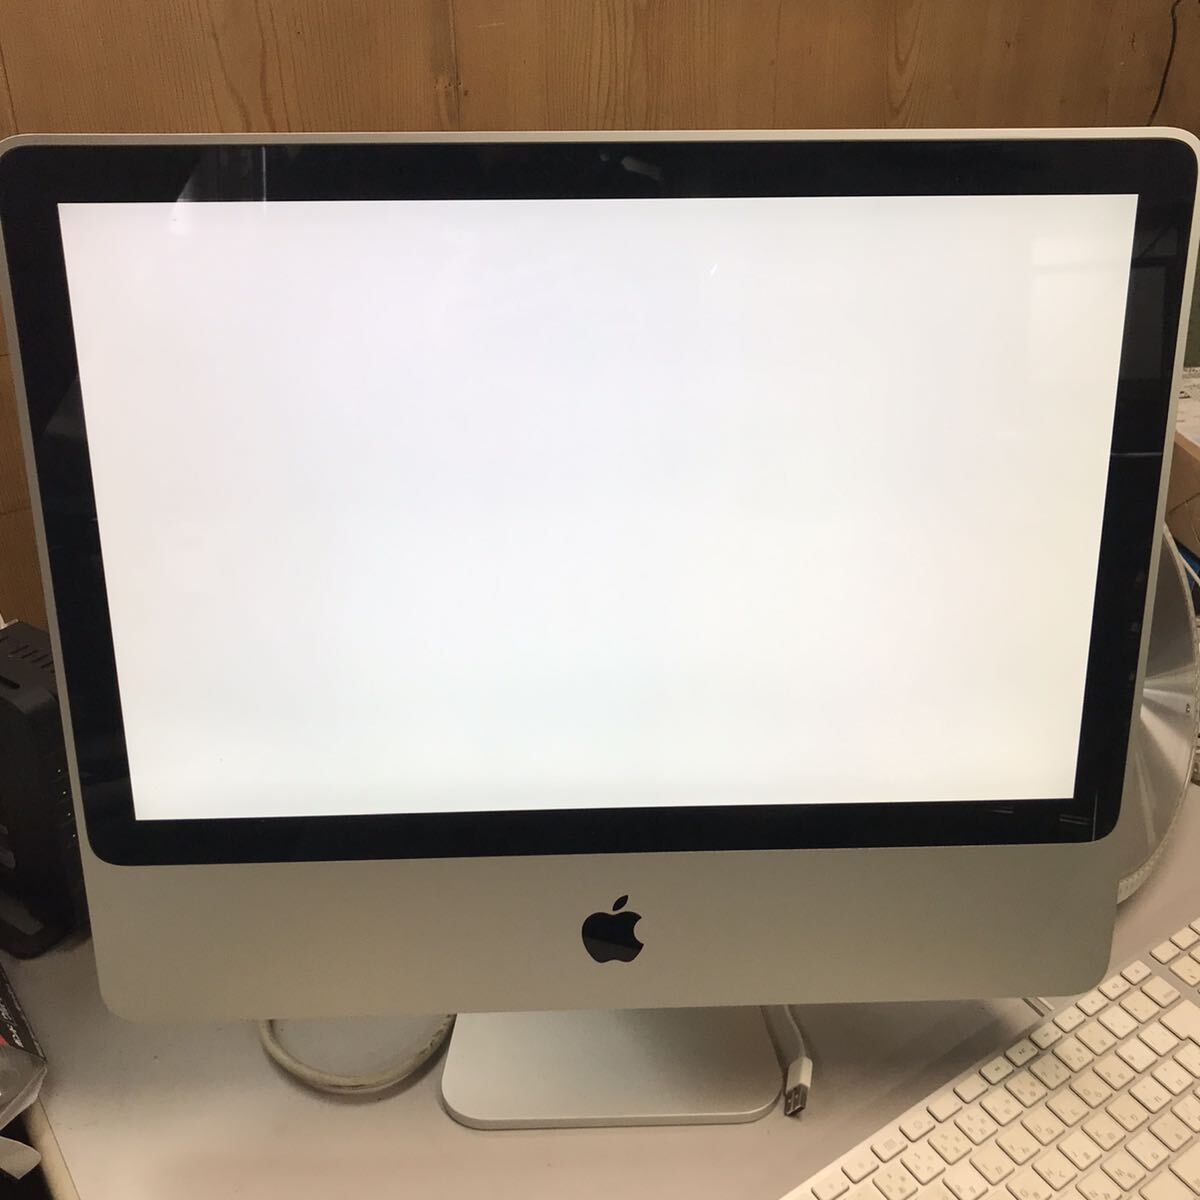 Apple アップル iMac モデルA1224 モニター デスクトップPC ジャンク品 電源 モニター起動済み キーボード A1243 動作未確認の画像3